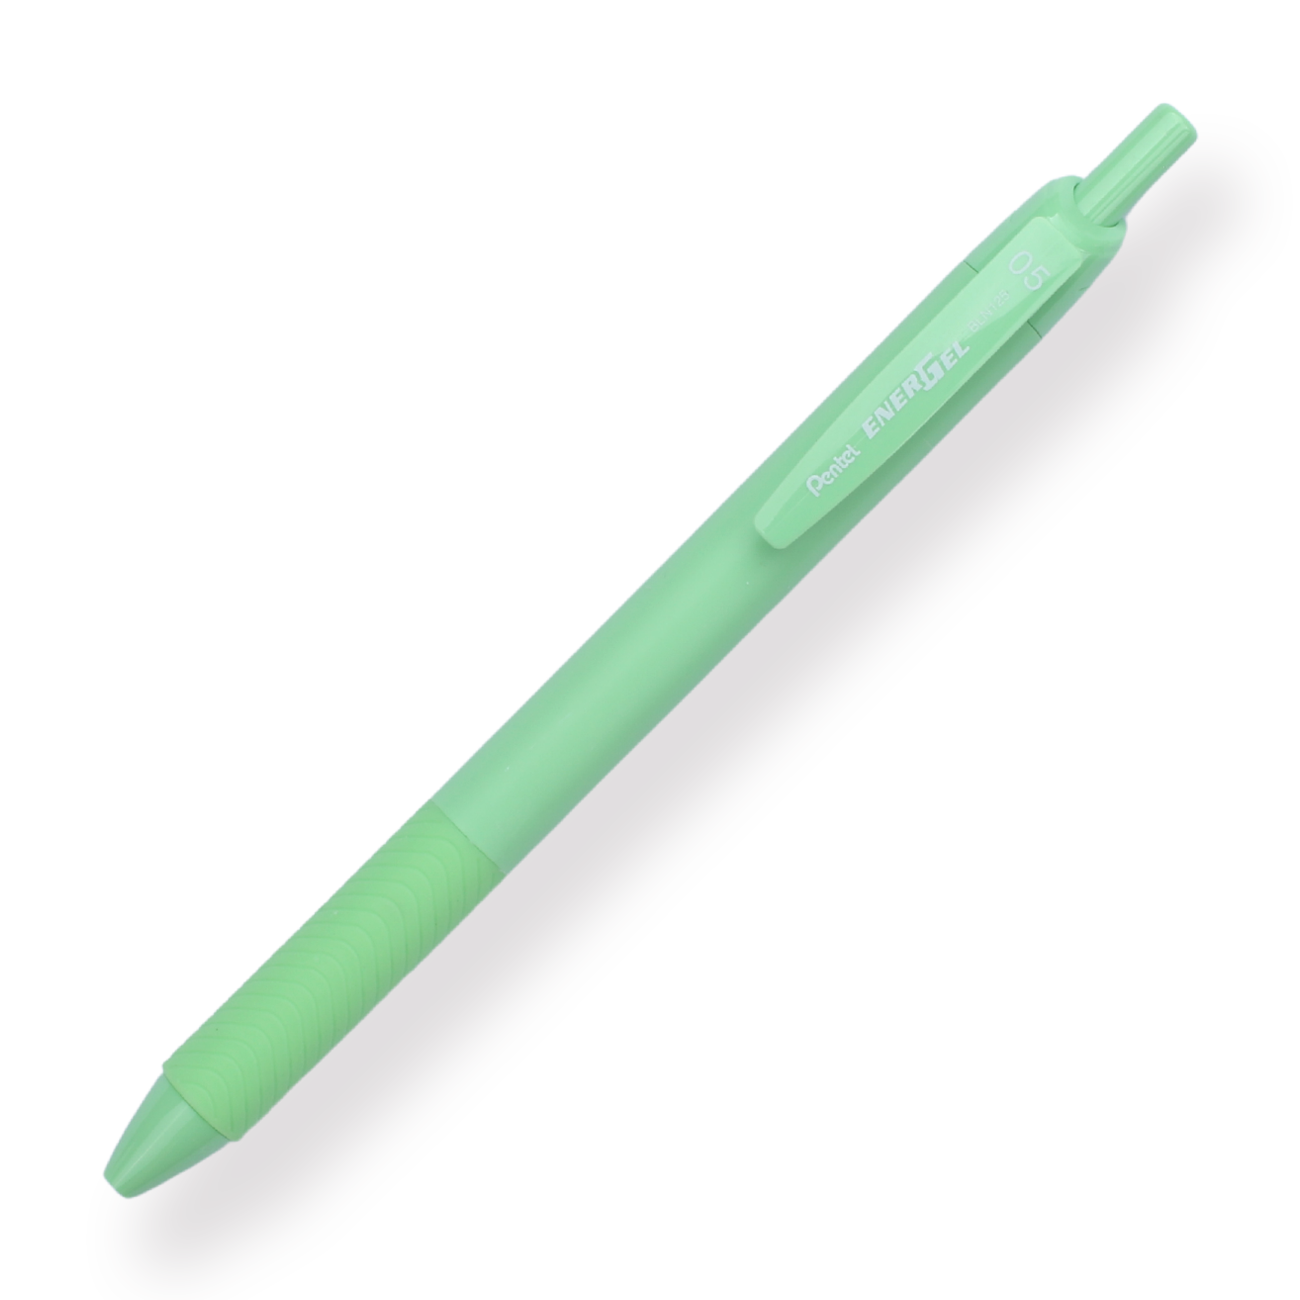 Pentel EnerGel Gel Pen 0.5mm - Set of 3 - Mint Candy - Stationery Pal